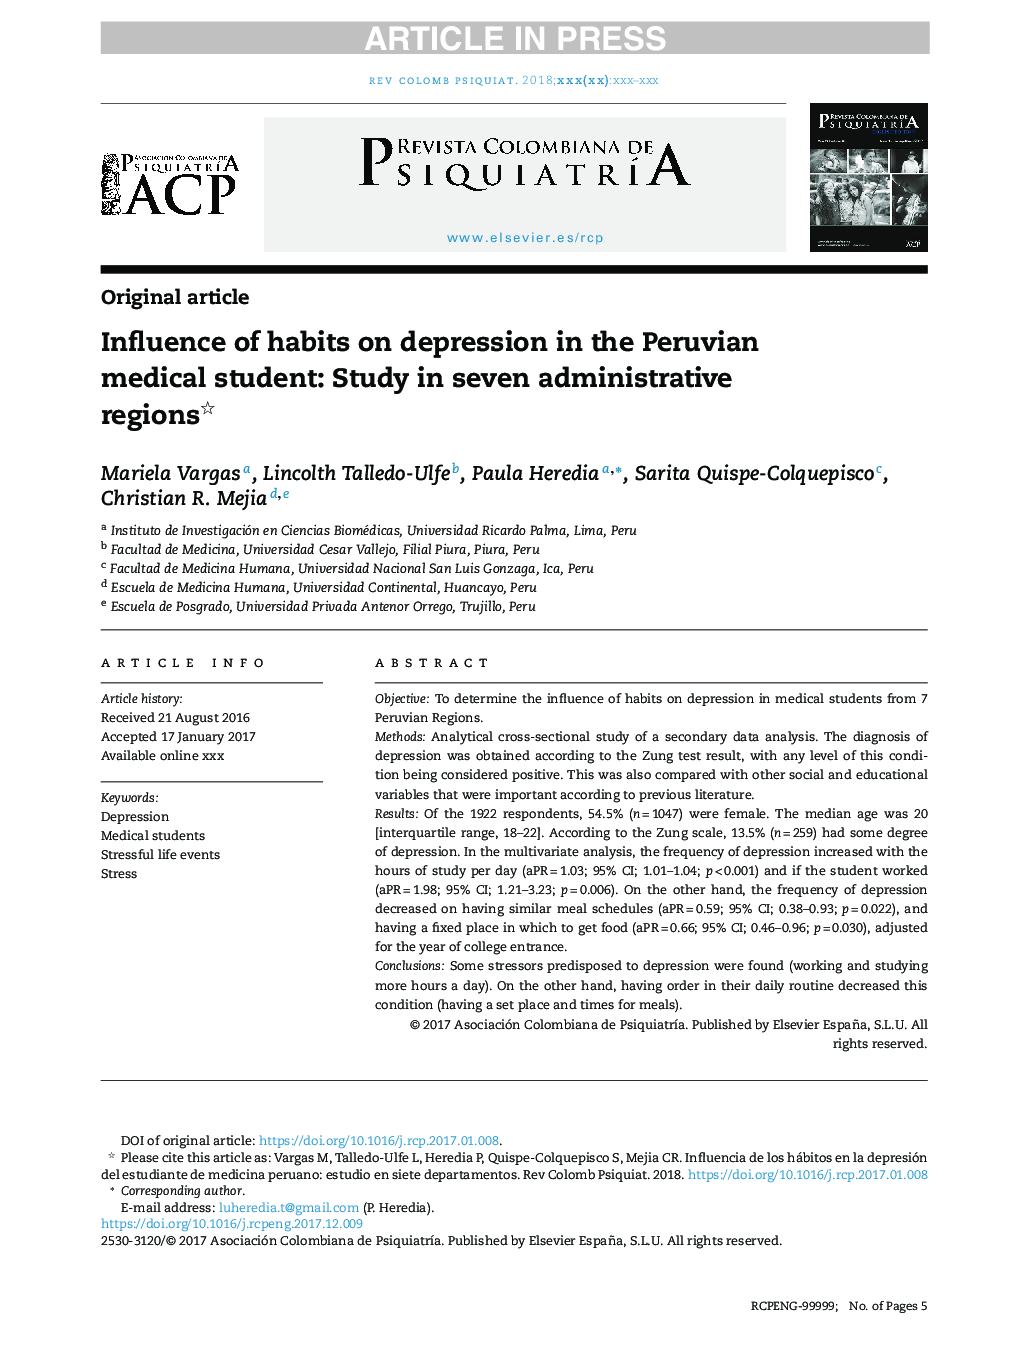 تأثیر عادات بر افسردگی در دانشجویان پزشکی پرو: مطالعه در هفت منطقه اداری